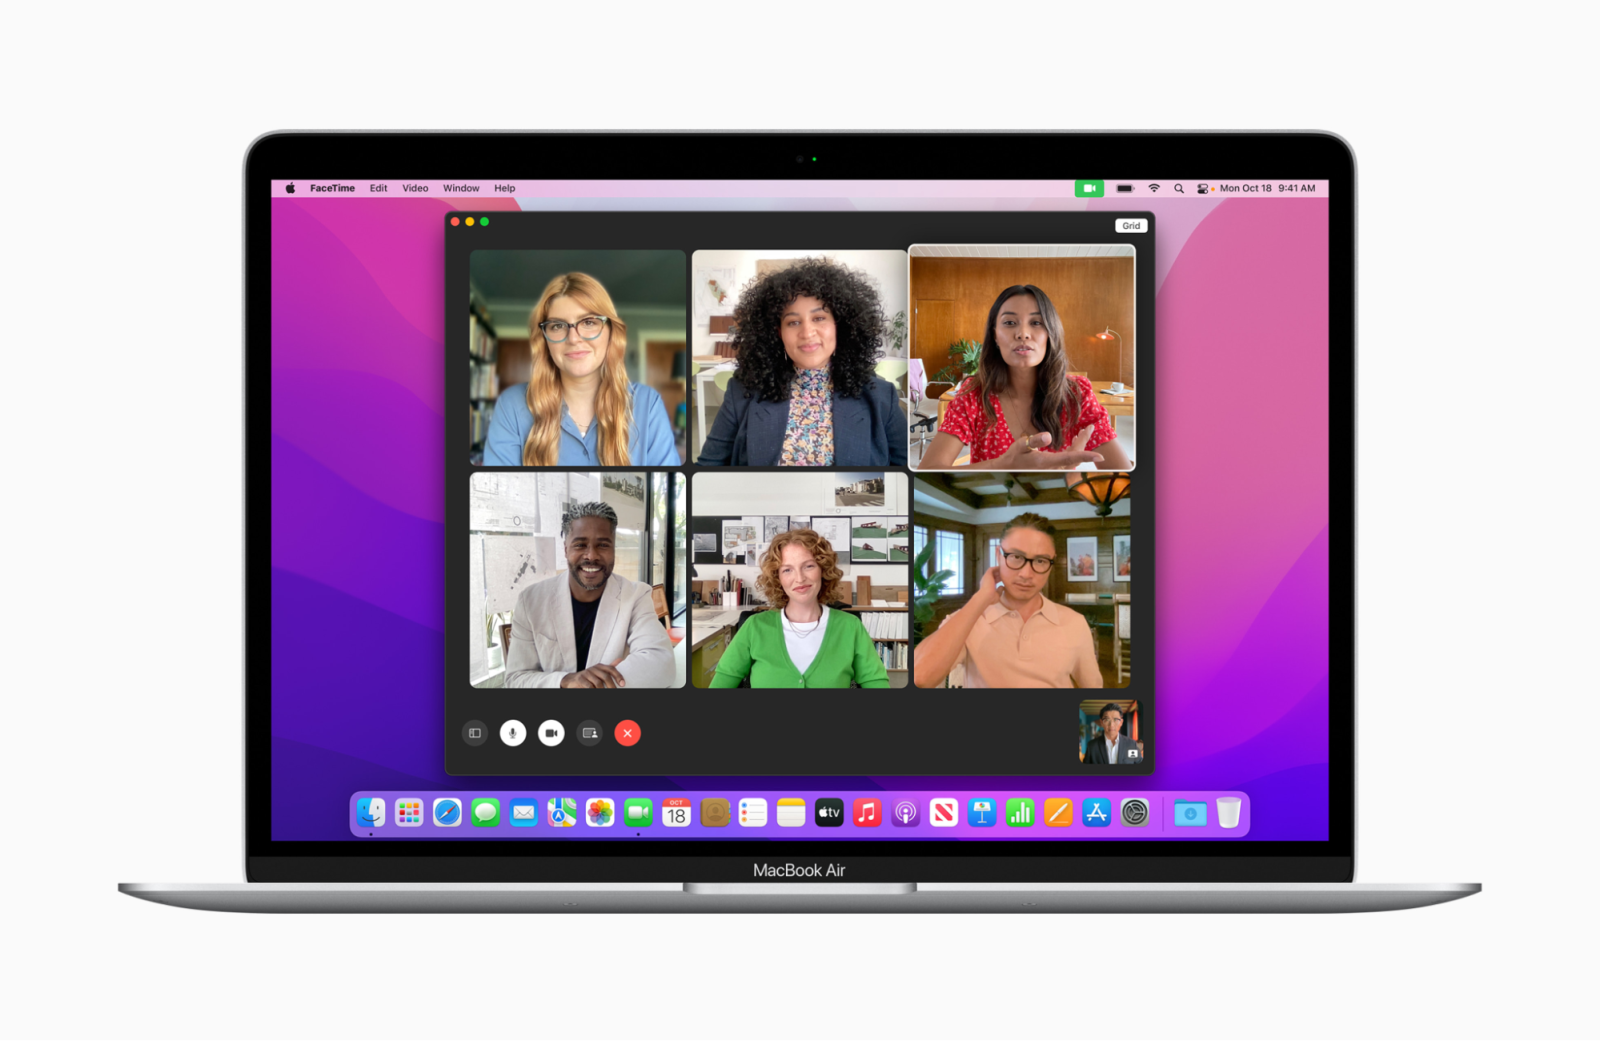 MacBook được trang bị webcam Facetime 720p và 1080p đem đến chất lượng hình mượt mà với khả năng bắt sáng tốt